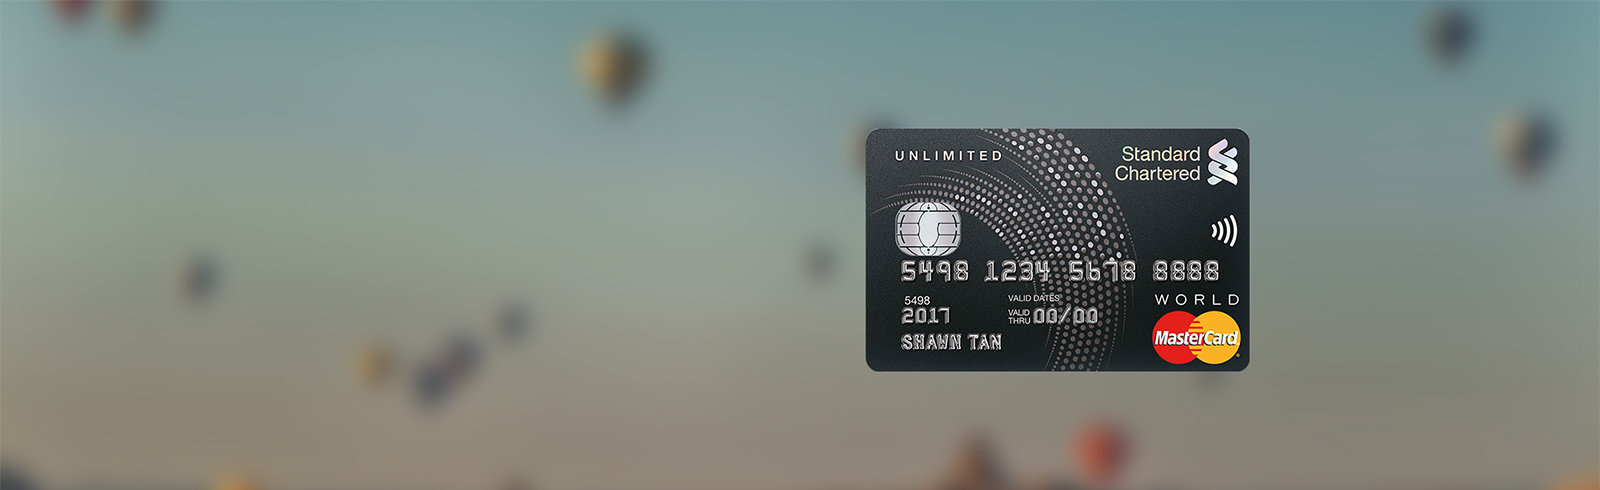 SG Unlimited Cashback Credit Card